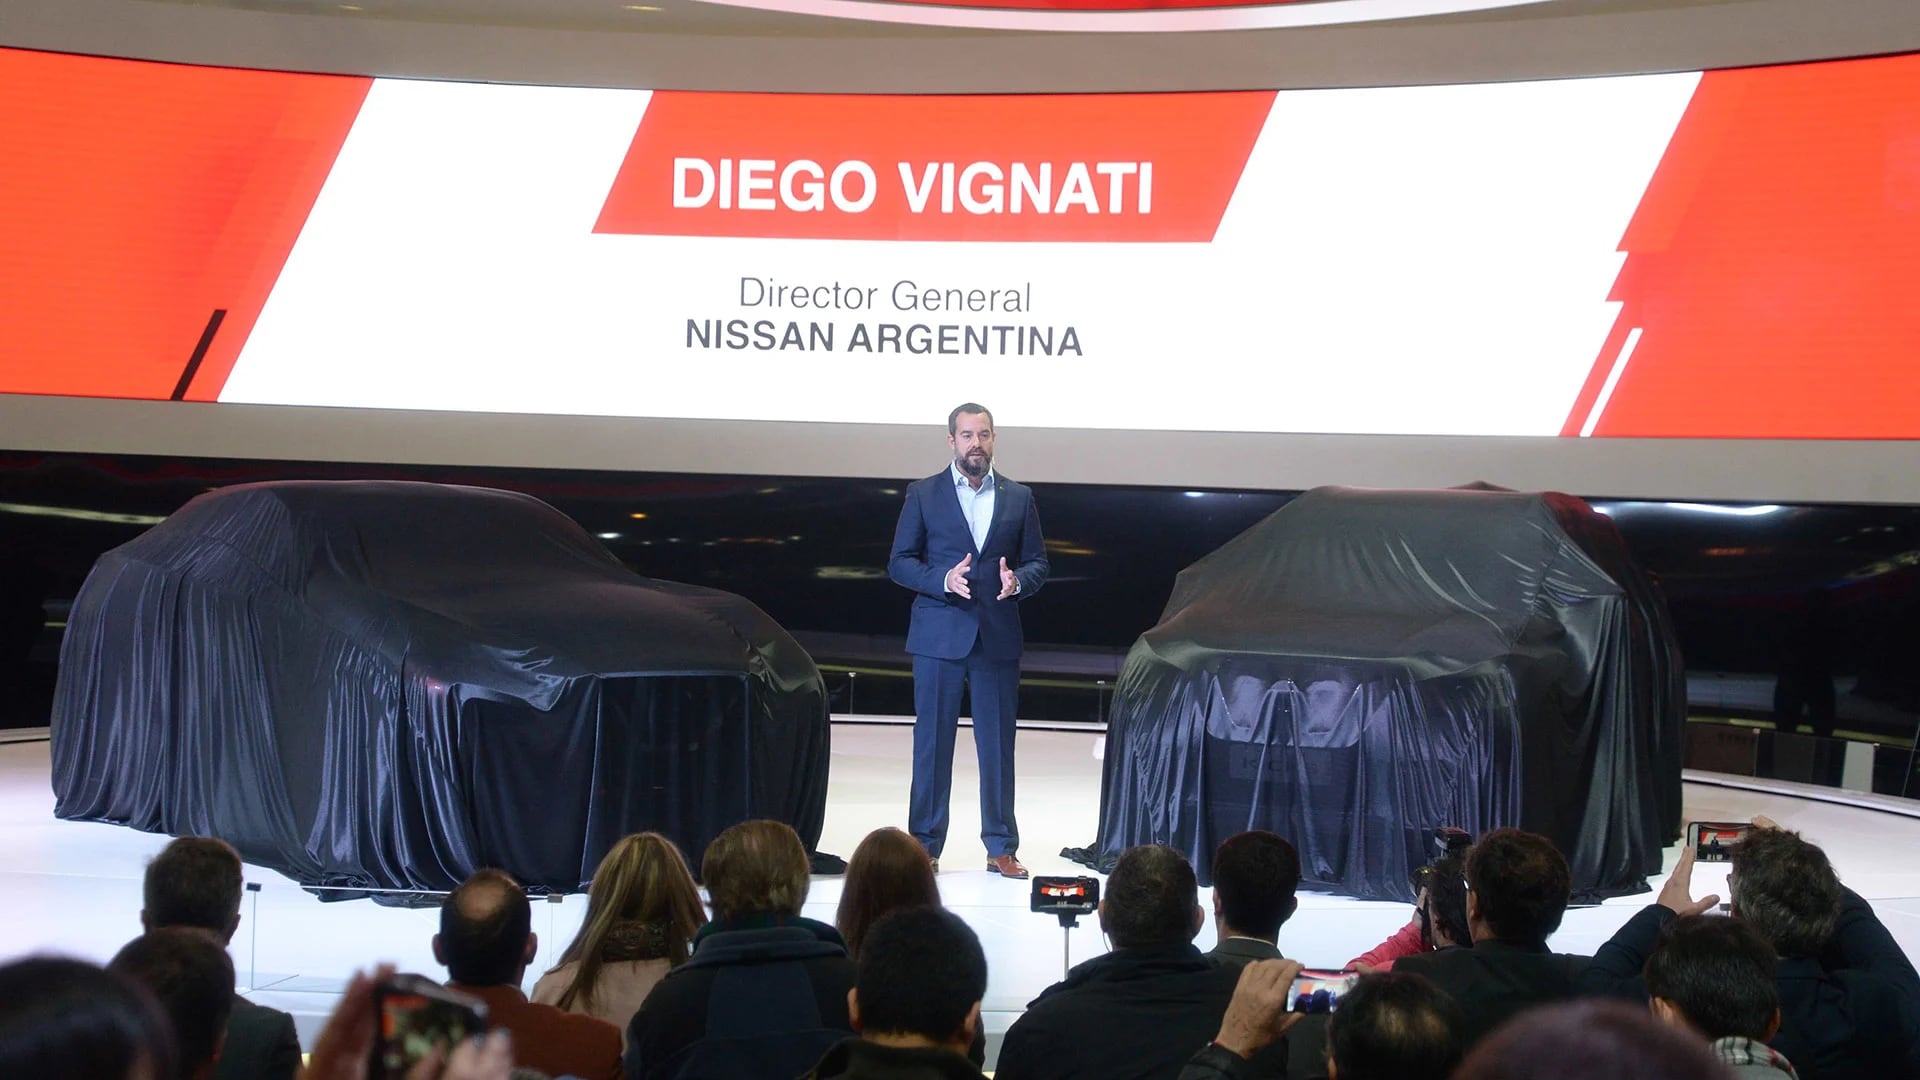 Diego Vignati, Director General de Nissan Argentina durante la conferencia de prensa de la marca el pasado 9 de junio